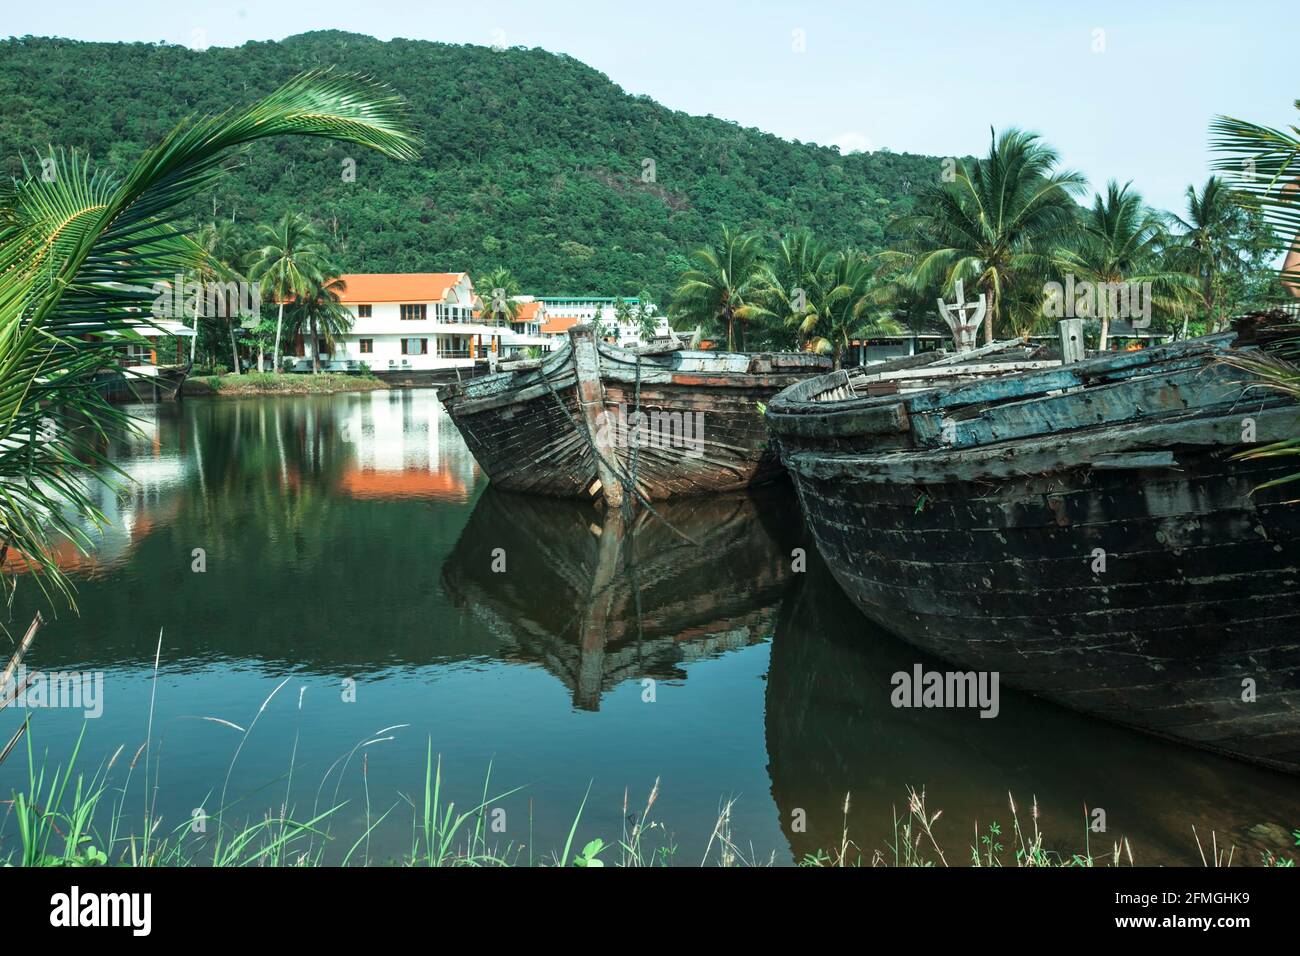 Un lac avec de vieux bateaux abandonnés dans la jungle thaïlandaise. Banque D'Images